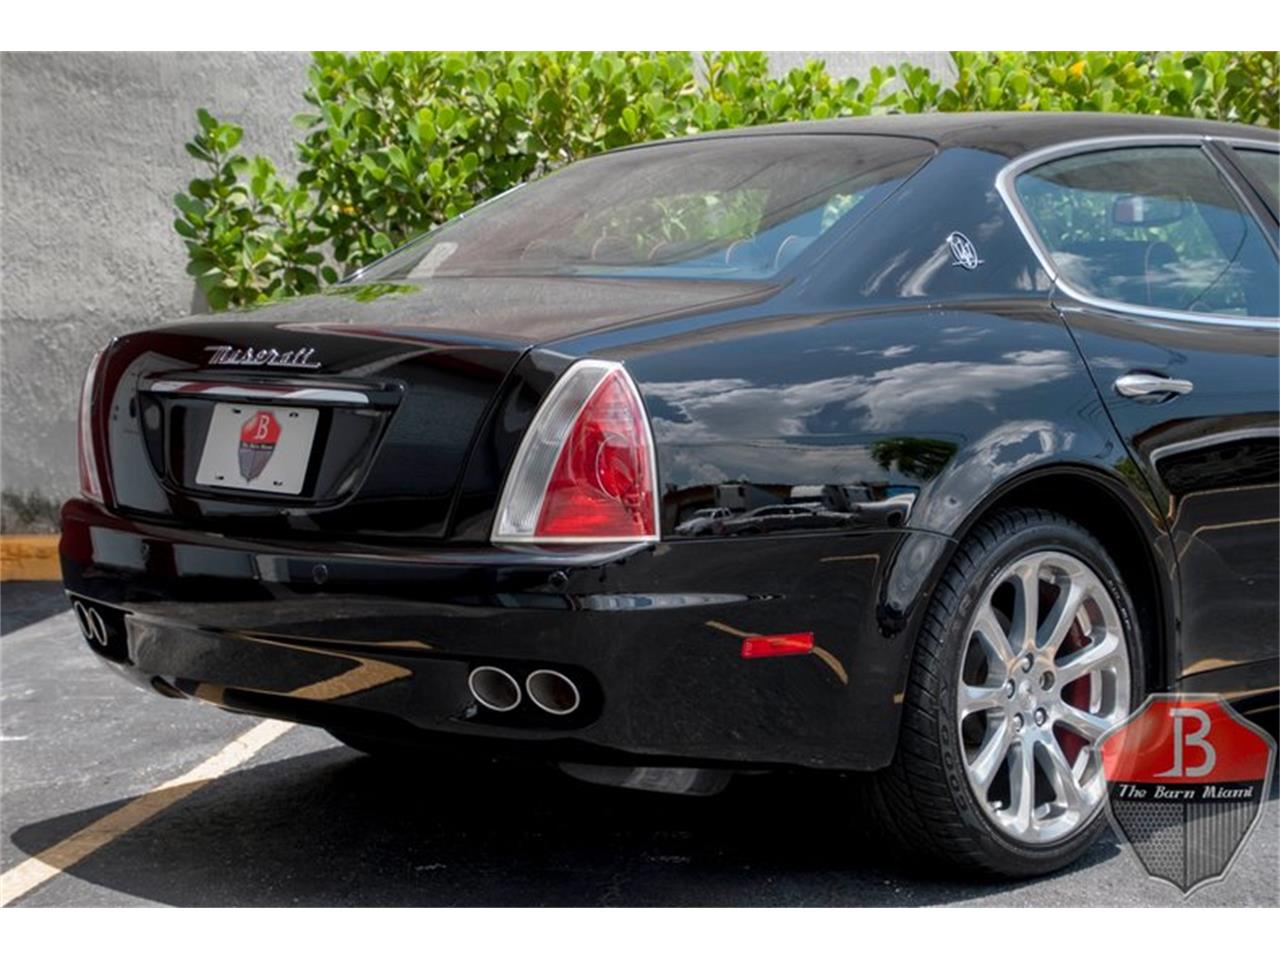 2006 Maserati Quattroporte for sale in Miami, FL ...